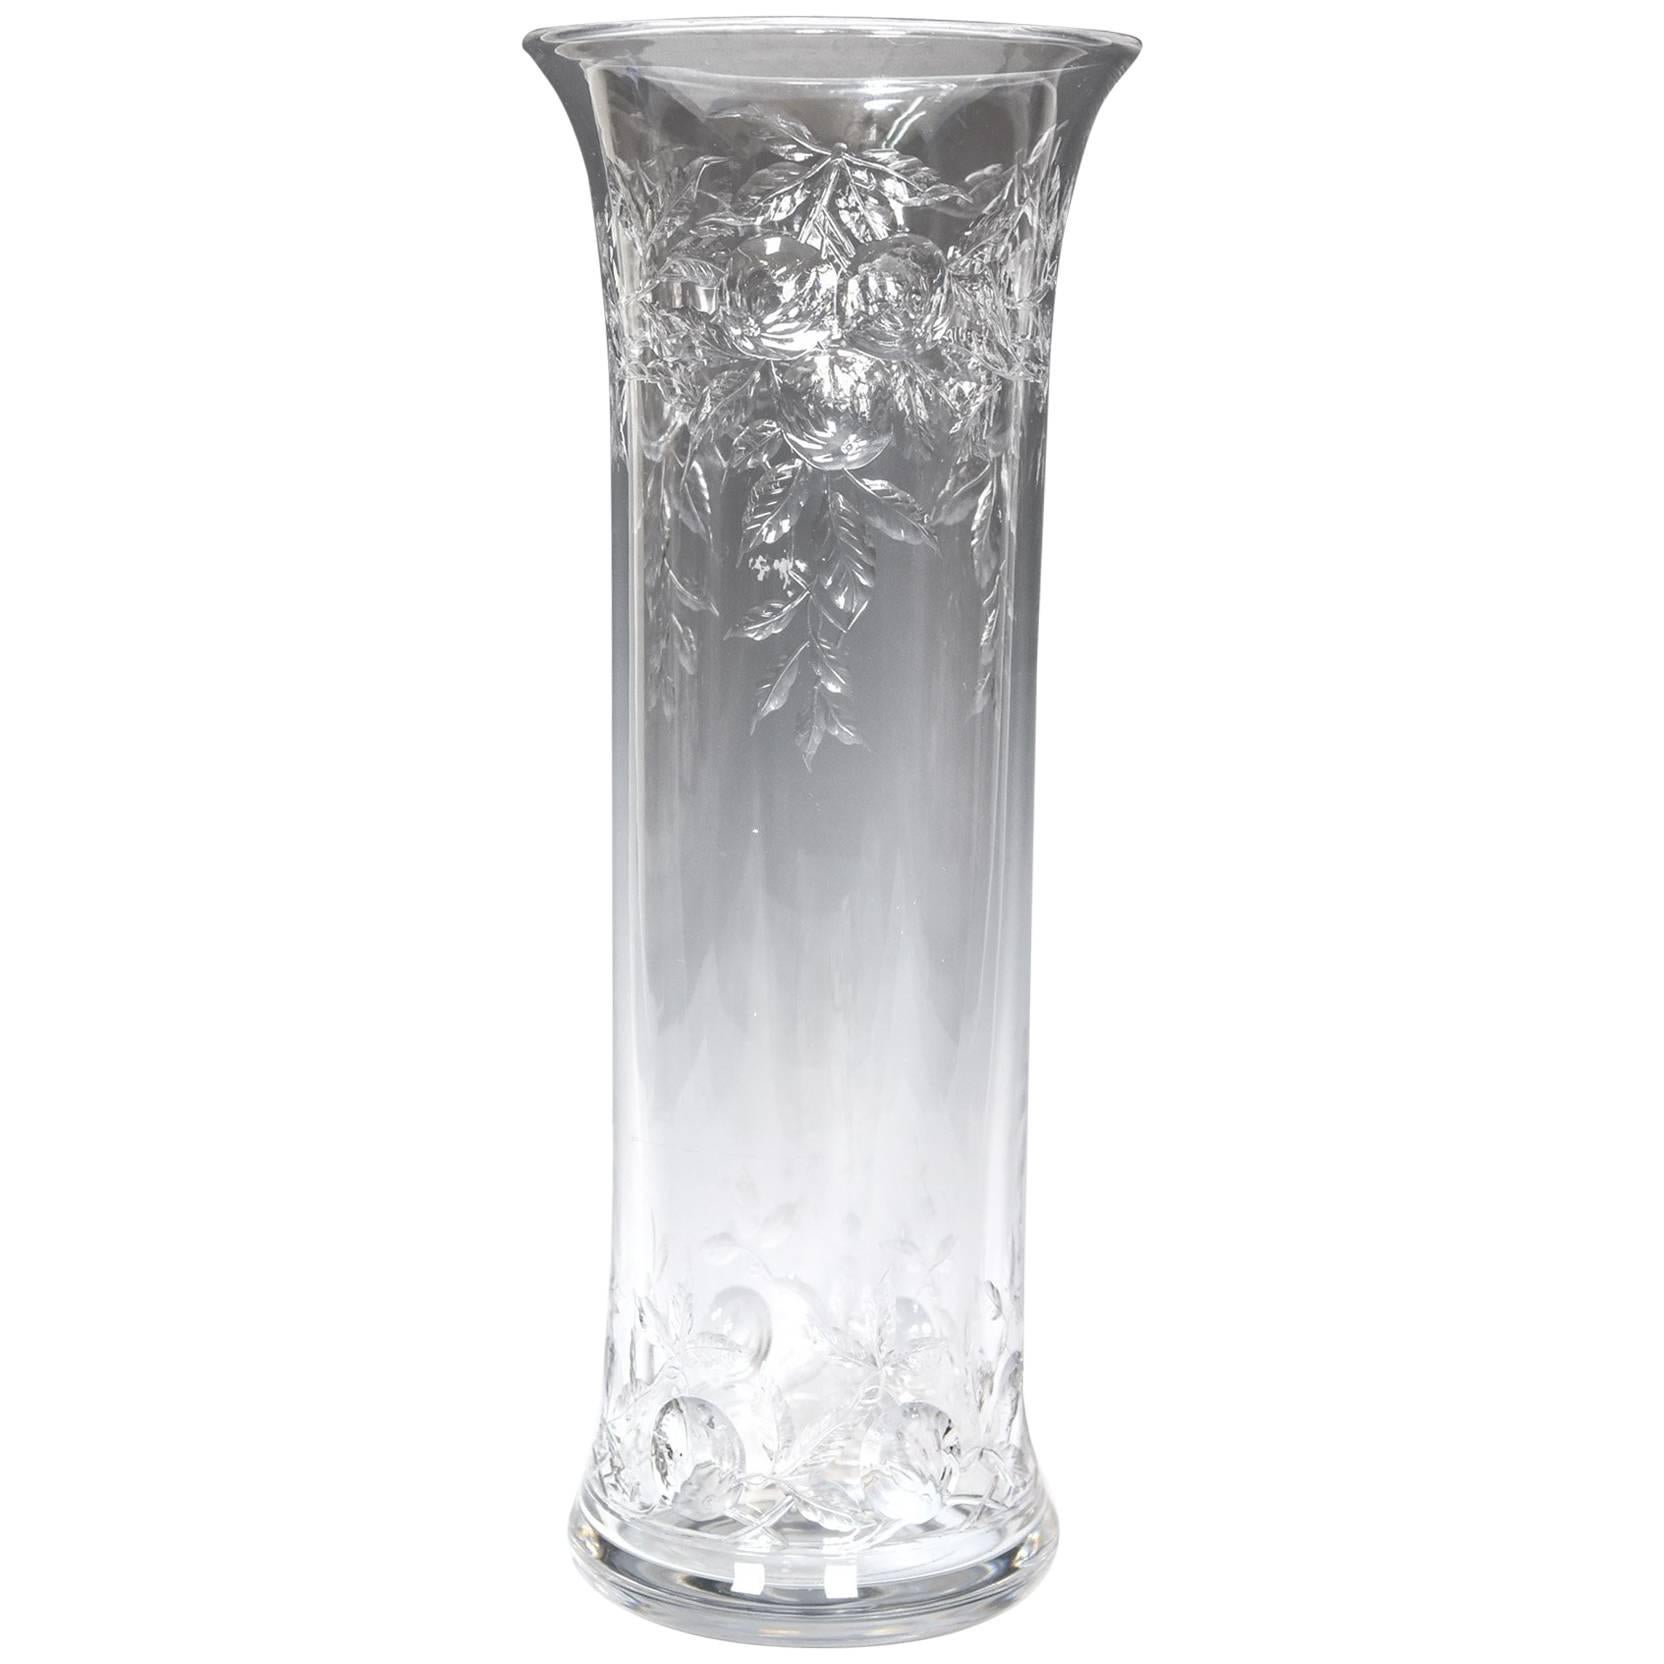 Grand vase en cristal soufflé à la main de Baccarat avec motif de fruits taillés en intaille